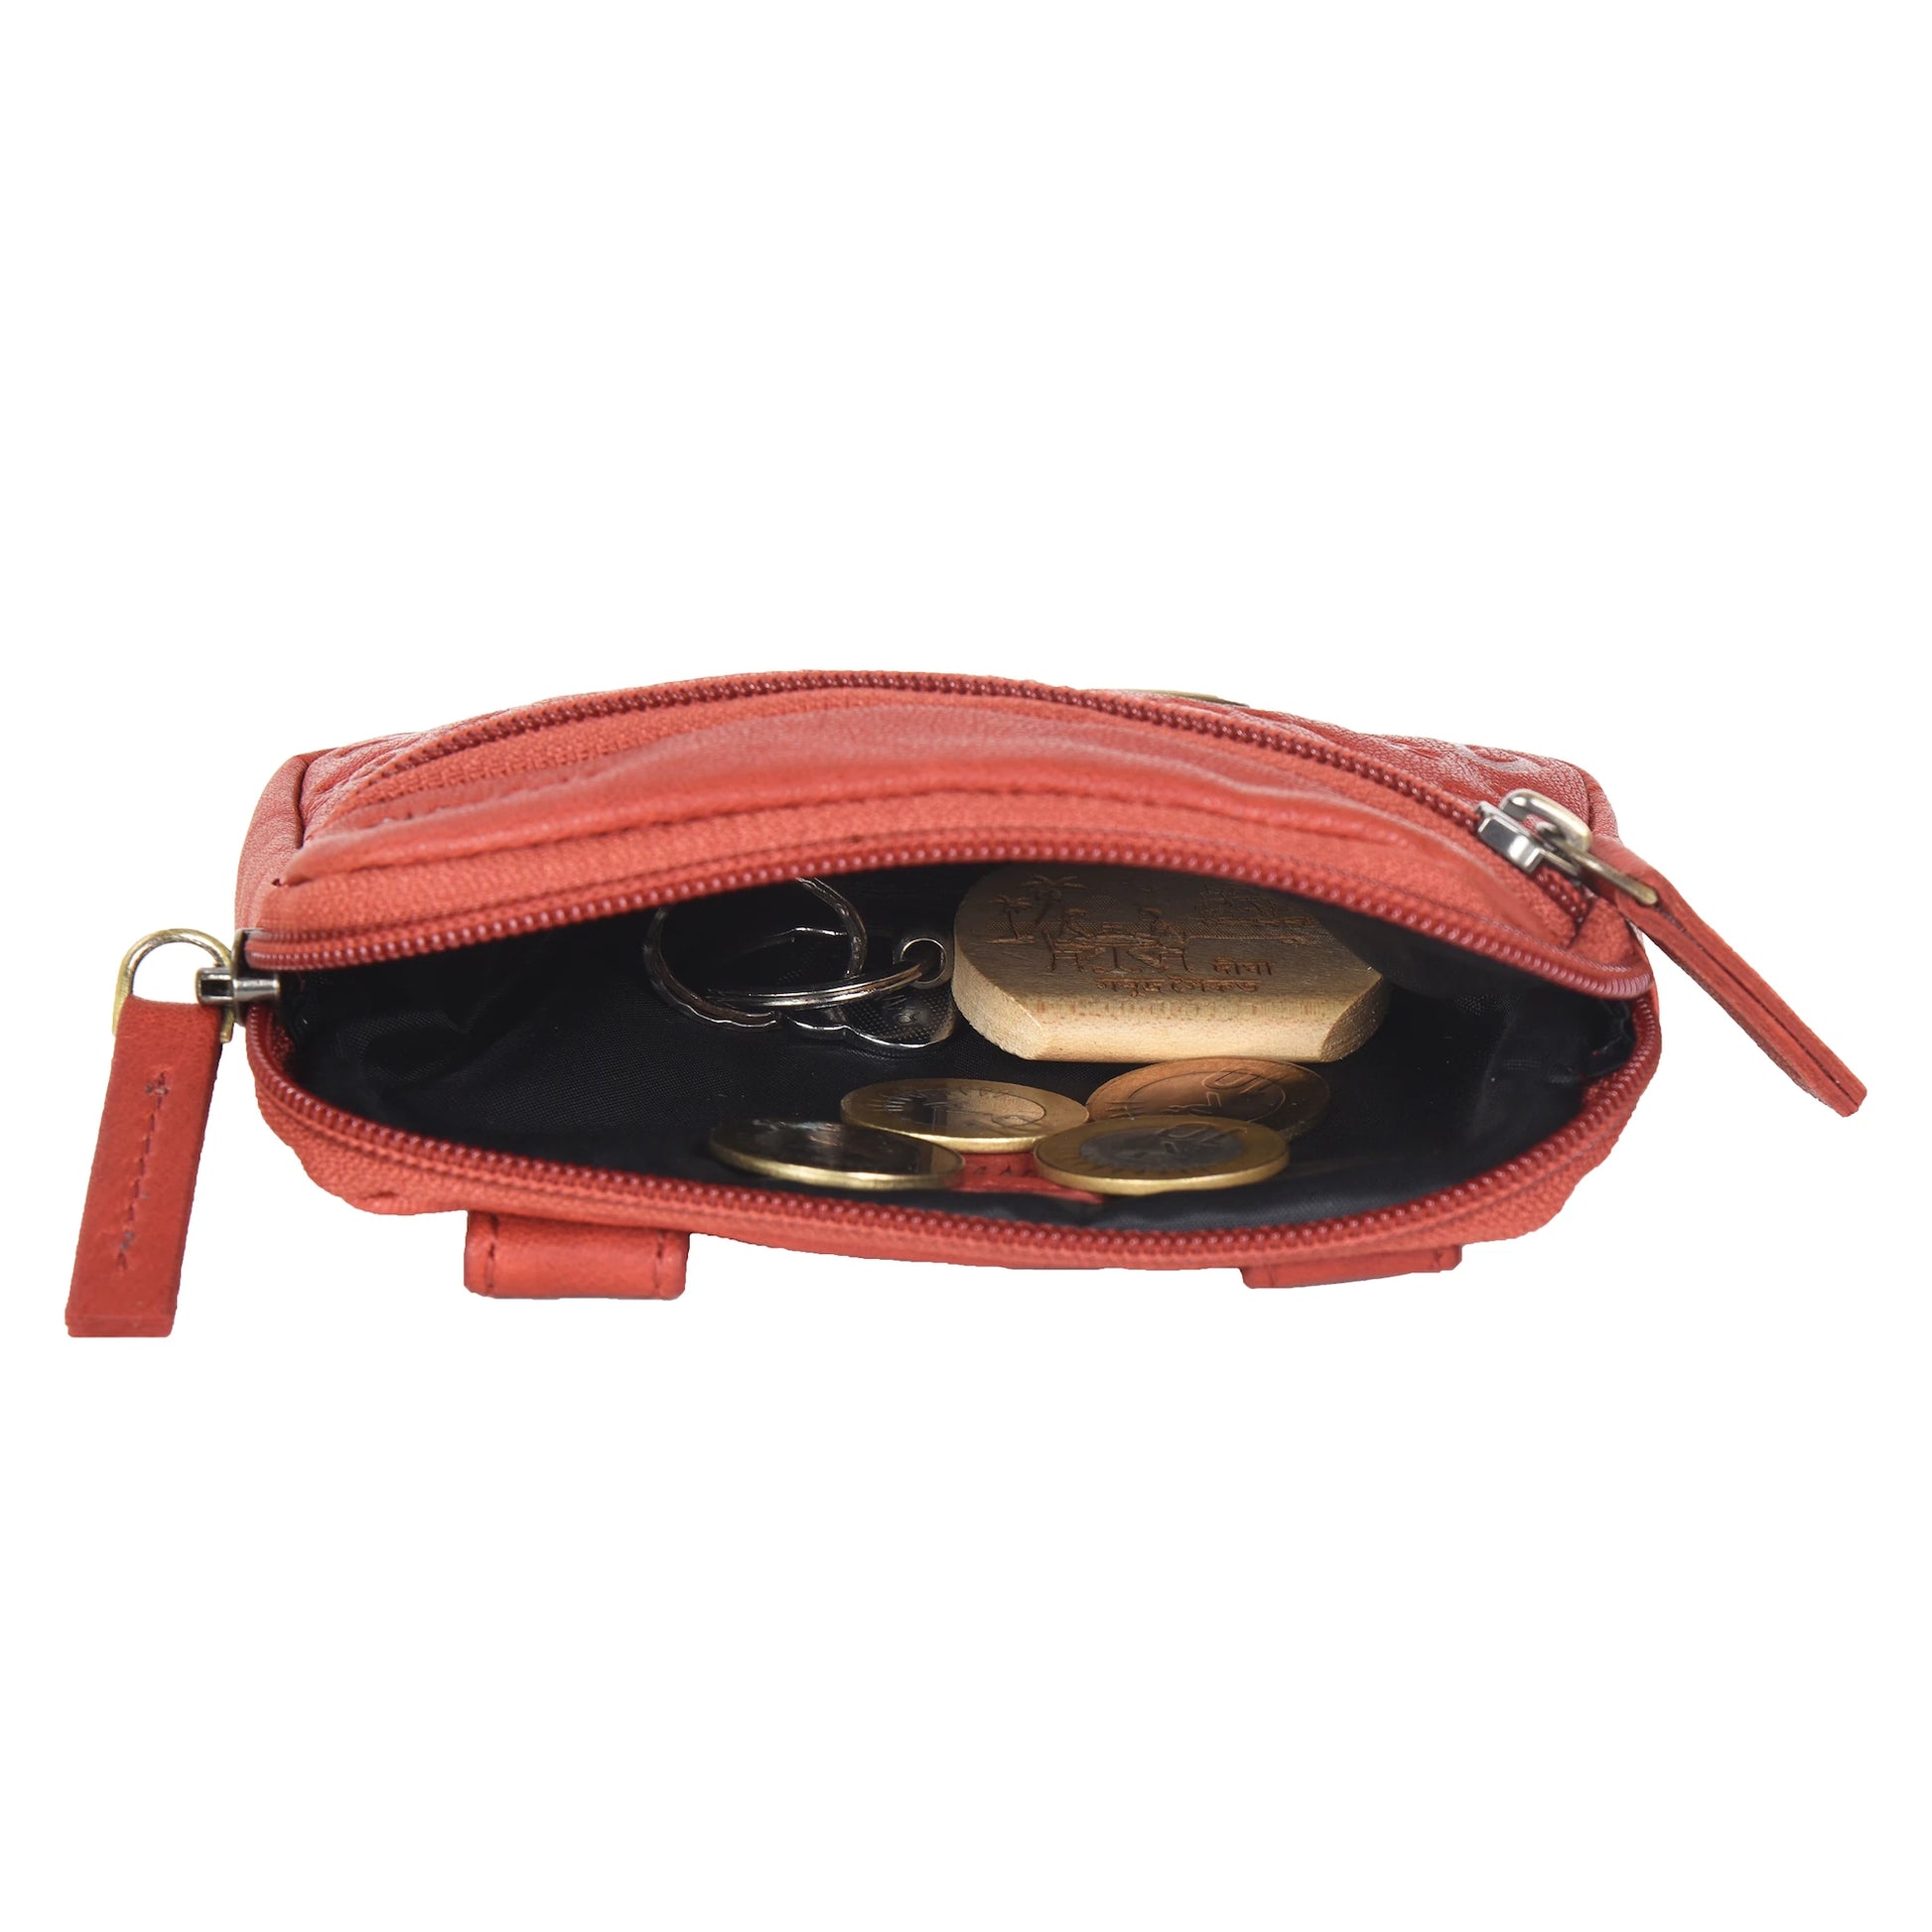 Kleine schlichte Beuteltasche aus rotem Leder. Ein großes Reißverschlussfach bietet Platz für Schlüssel, Kleingeld oder Leckerlis.